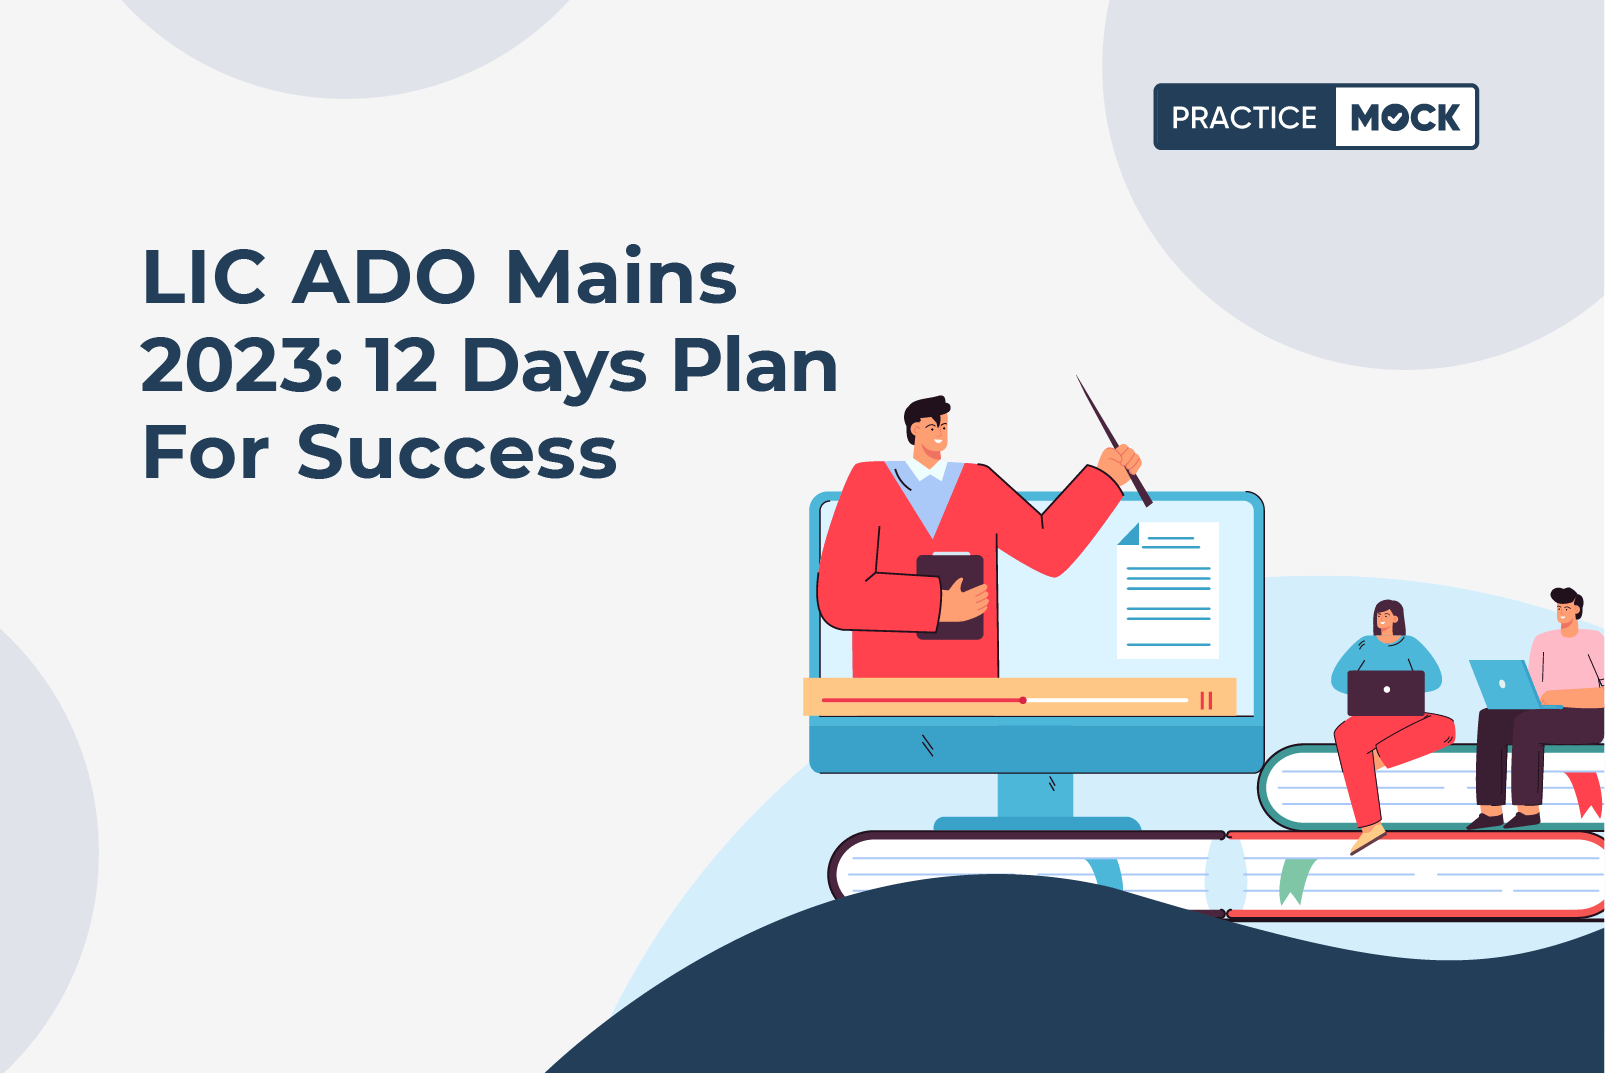 LIC ADO Mains 2023-12 Days Plan for Success